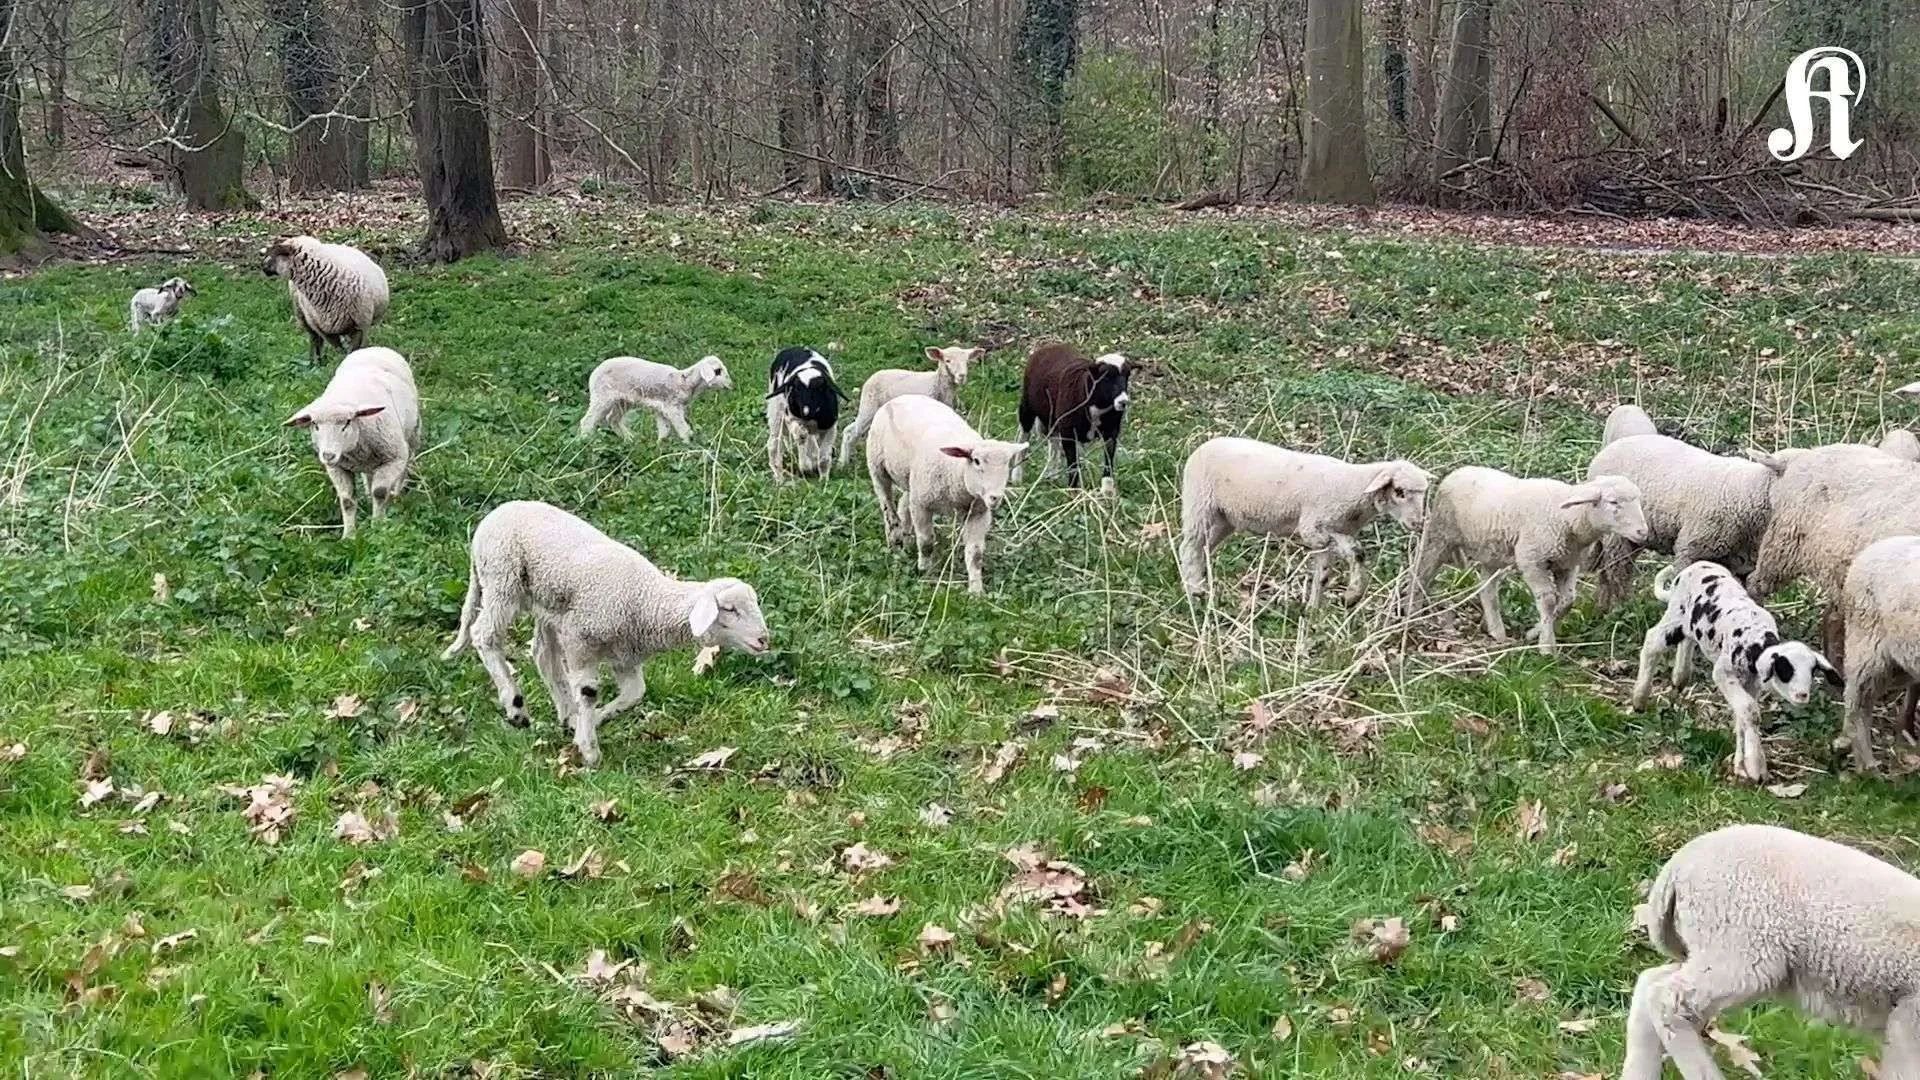 Kolońskie owce w pasie zieleni